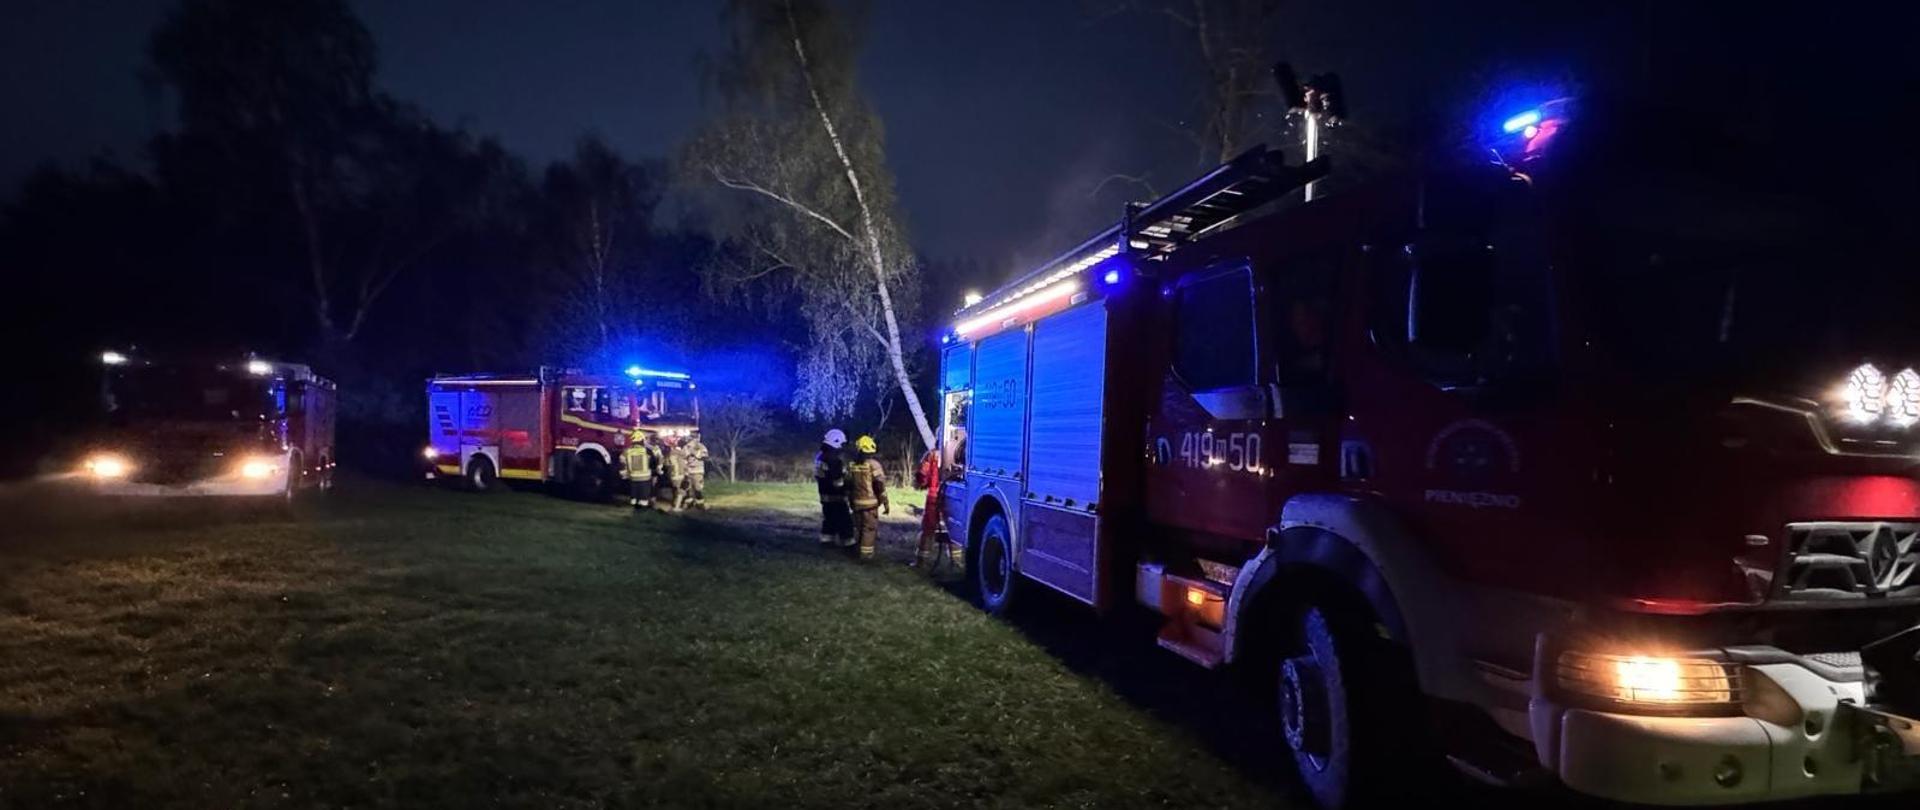 Zdjęcie zrobione nocą. Na zdjęciu stoją trzy samochody strażackie na światłach. Przy nich strażacy.